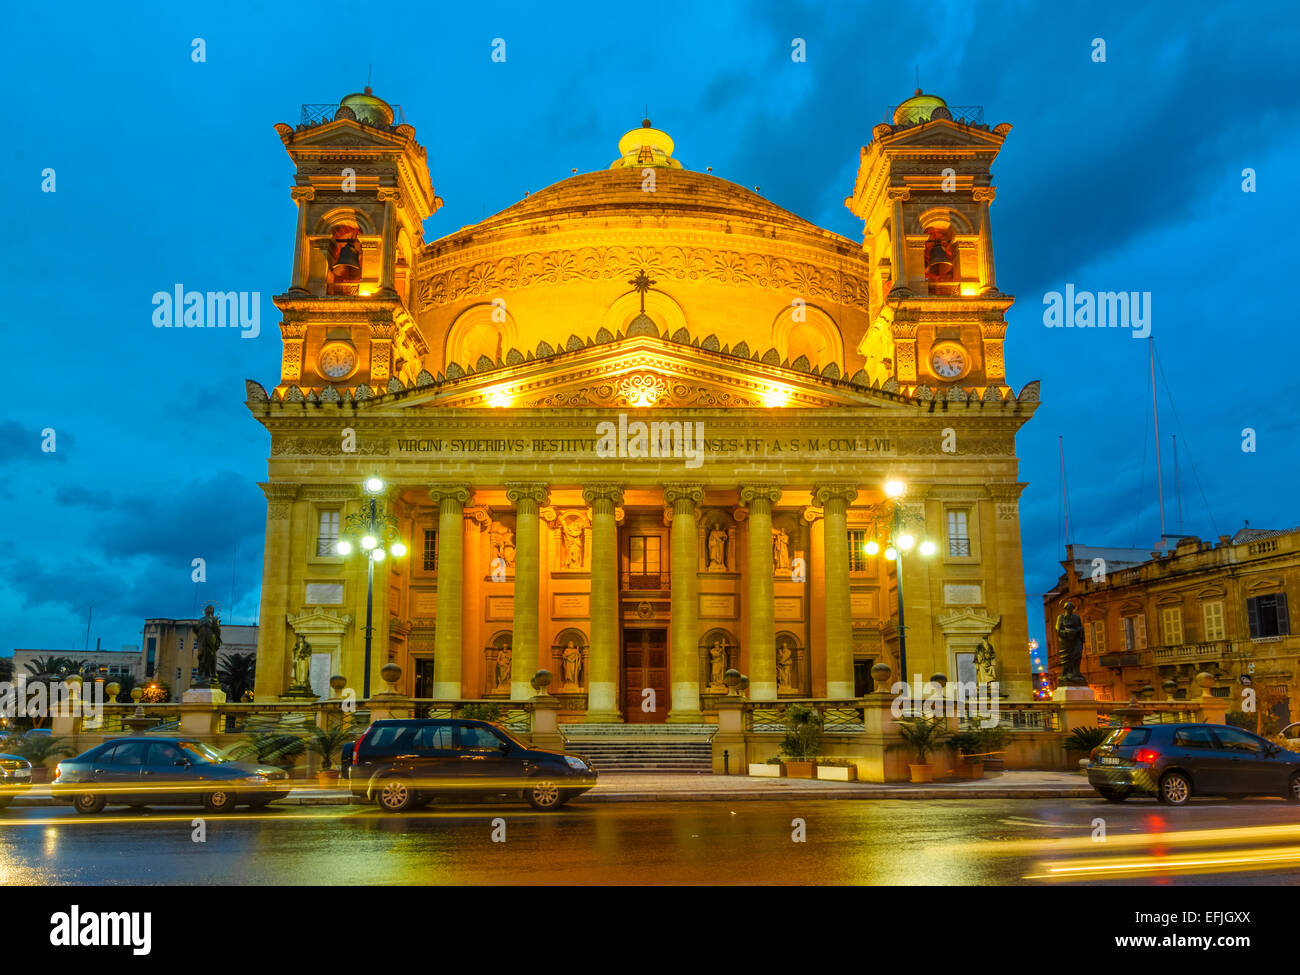 La famosa chiesa di Santa Maria in Mosta a Malta talvolta noto come la Rotonda di Mosta o il duomo di Mosta. È la terza più grande Foto Stock